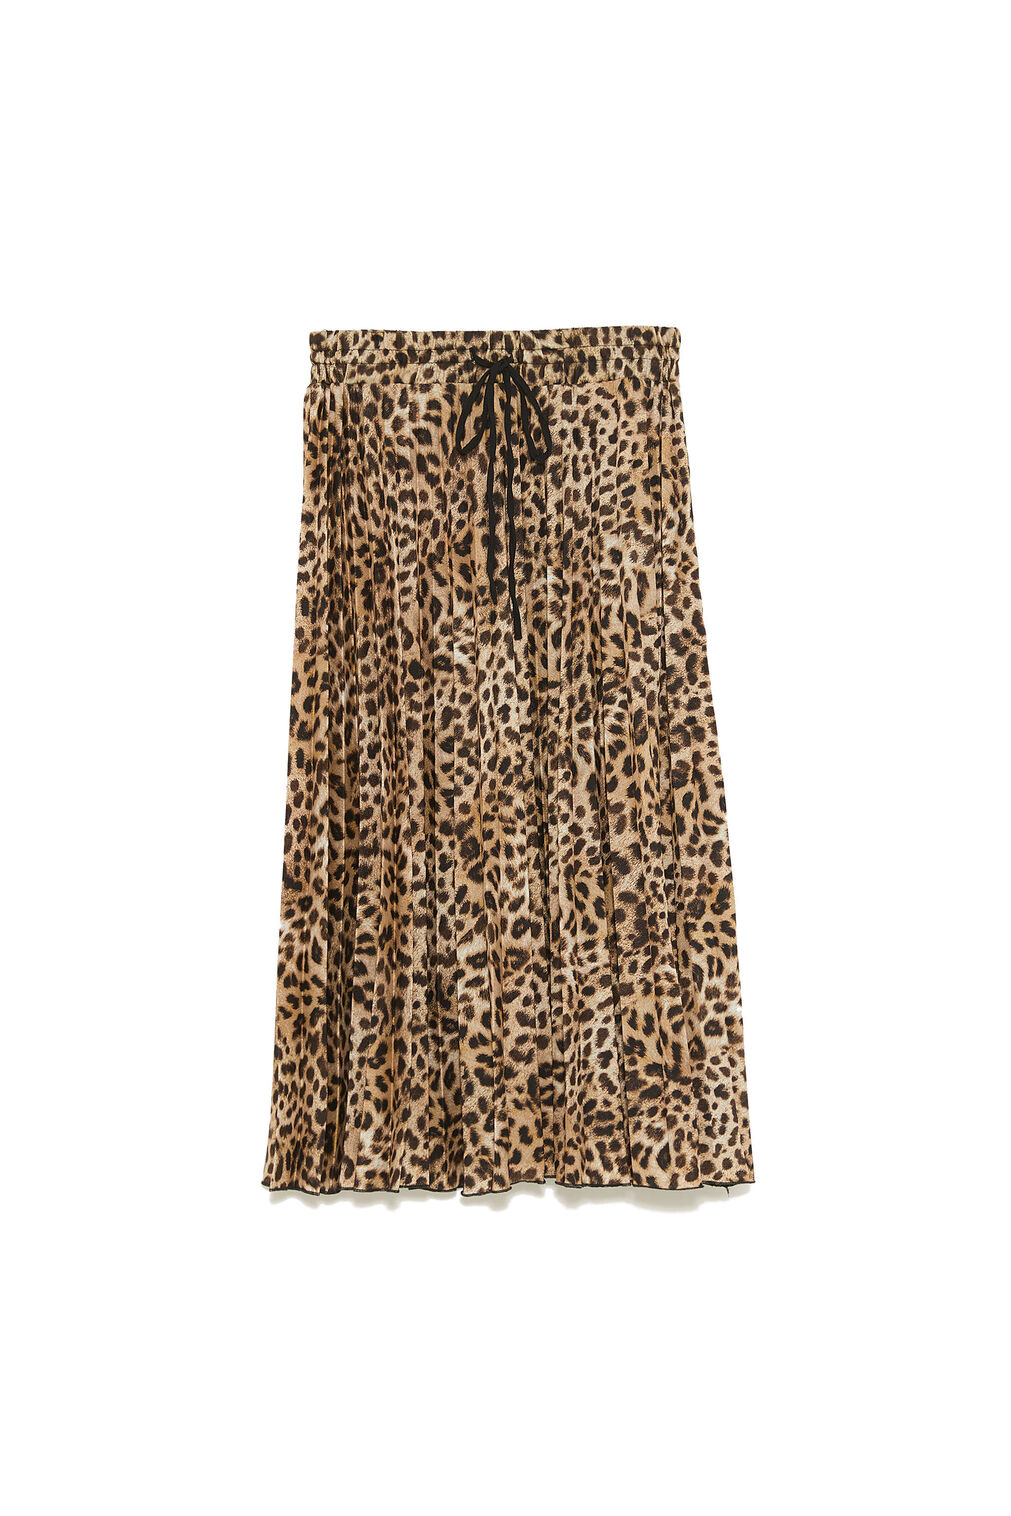 Falda midi plisada de animal print, de Zara.